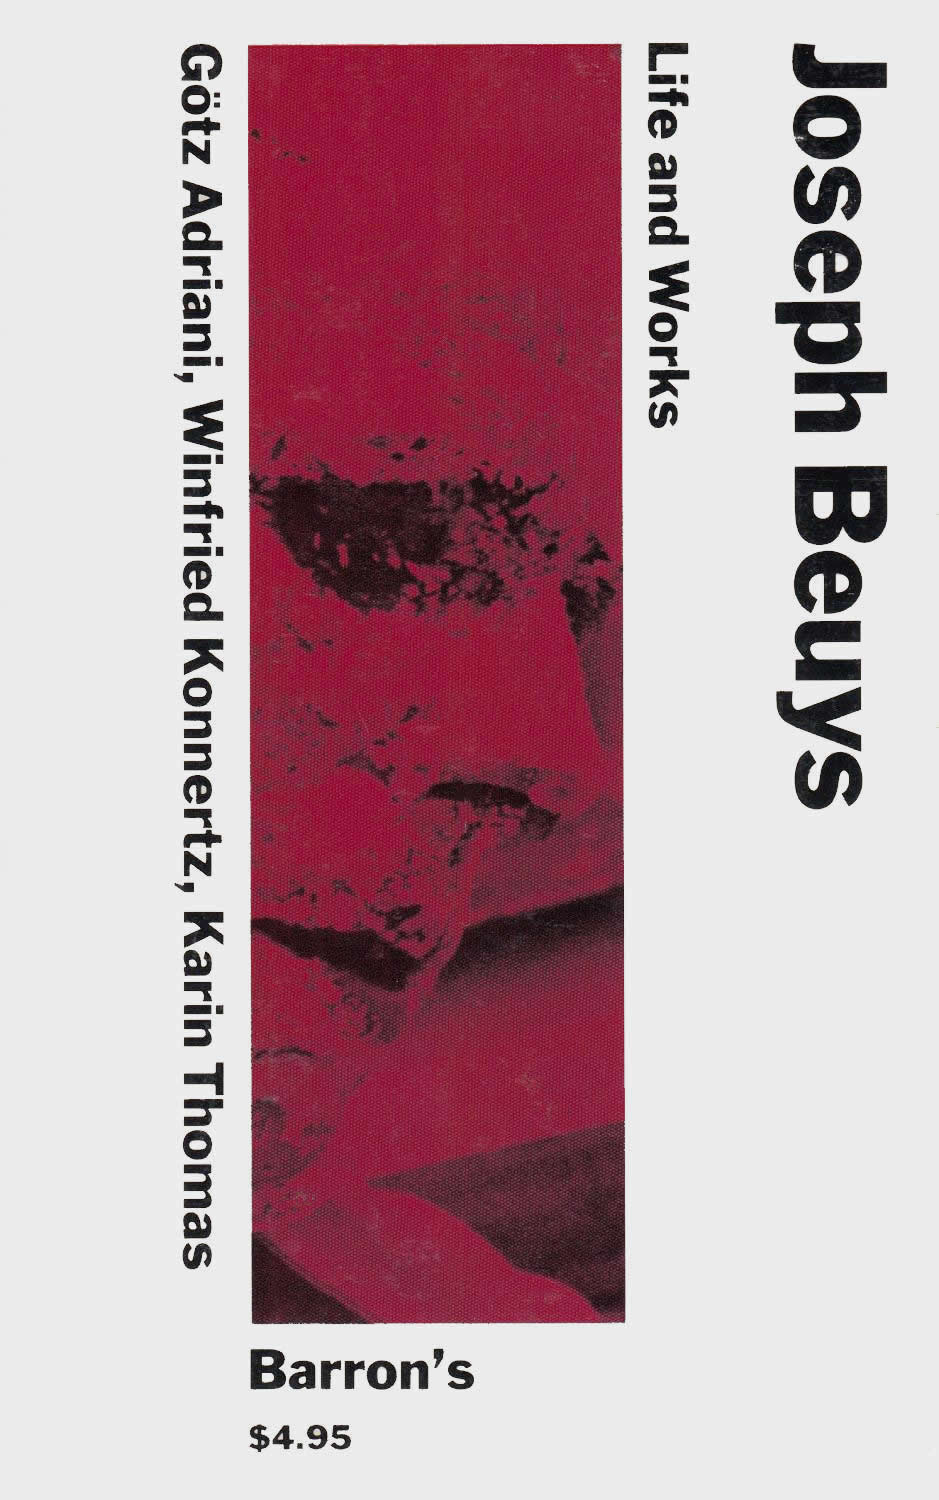 Joseph Beuys: Life and Works / Götz Adriani, Winfried Konnertz, Karin Thomas, Joseph Beuys